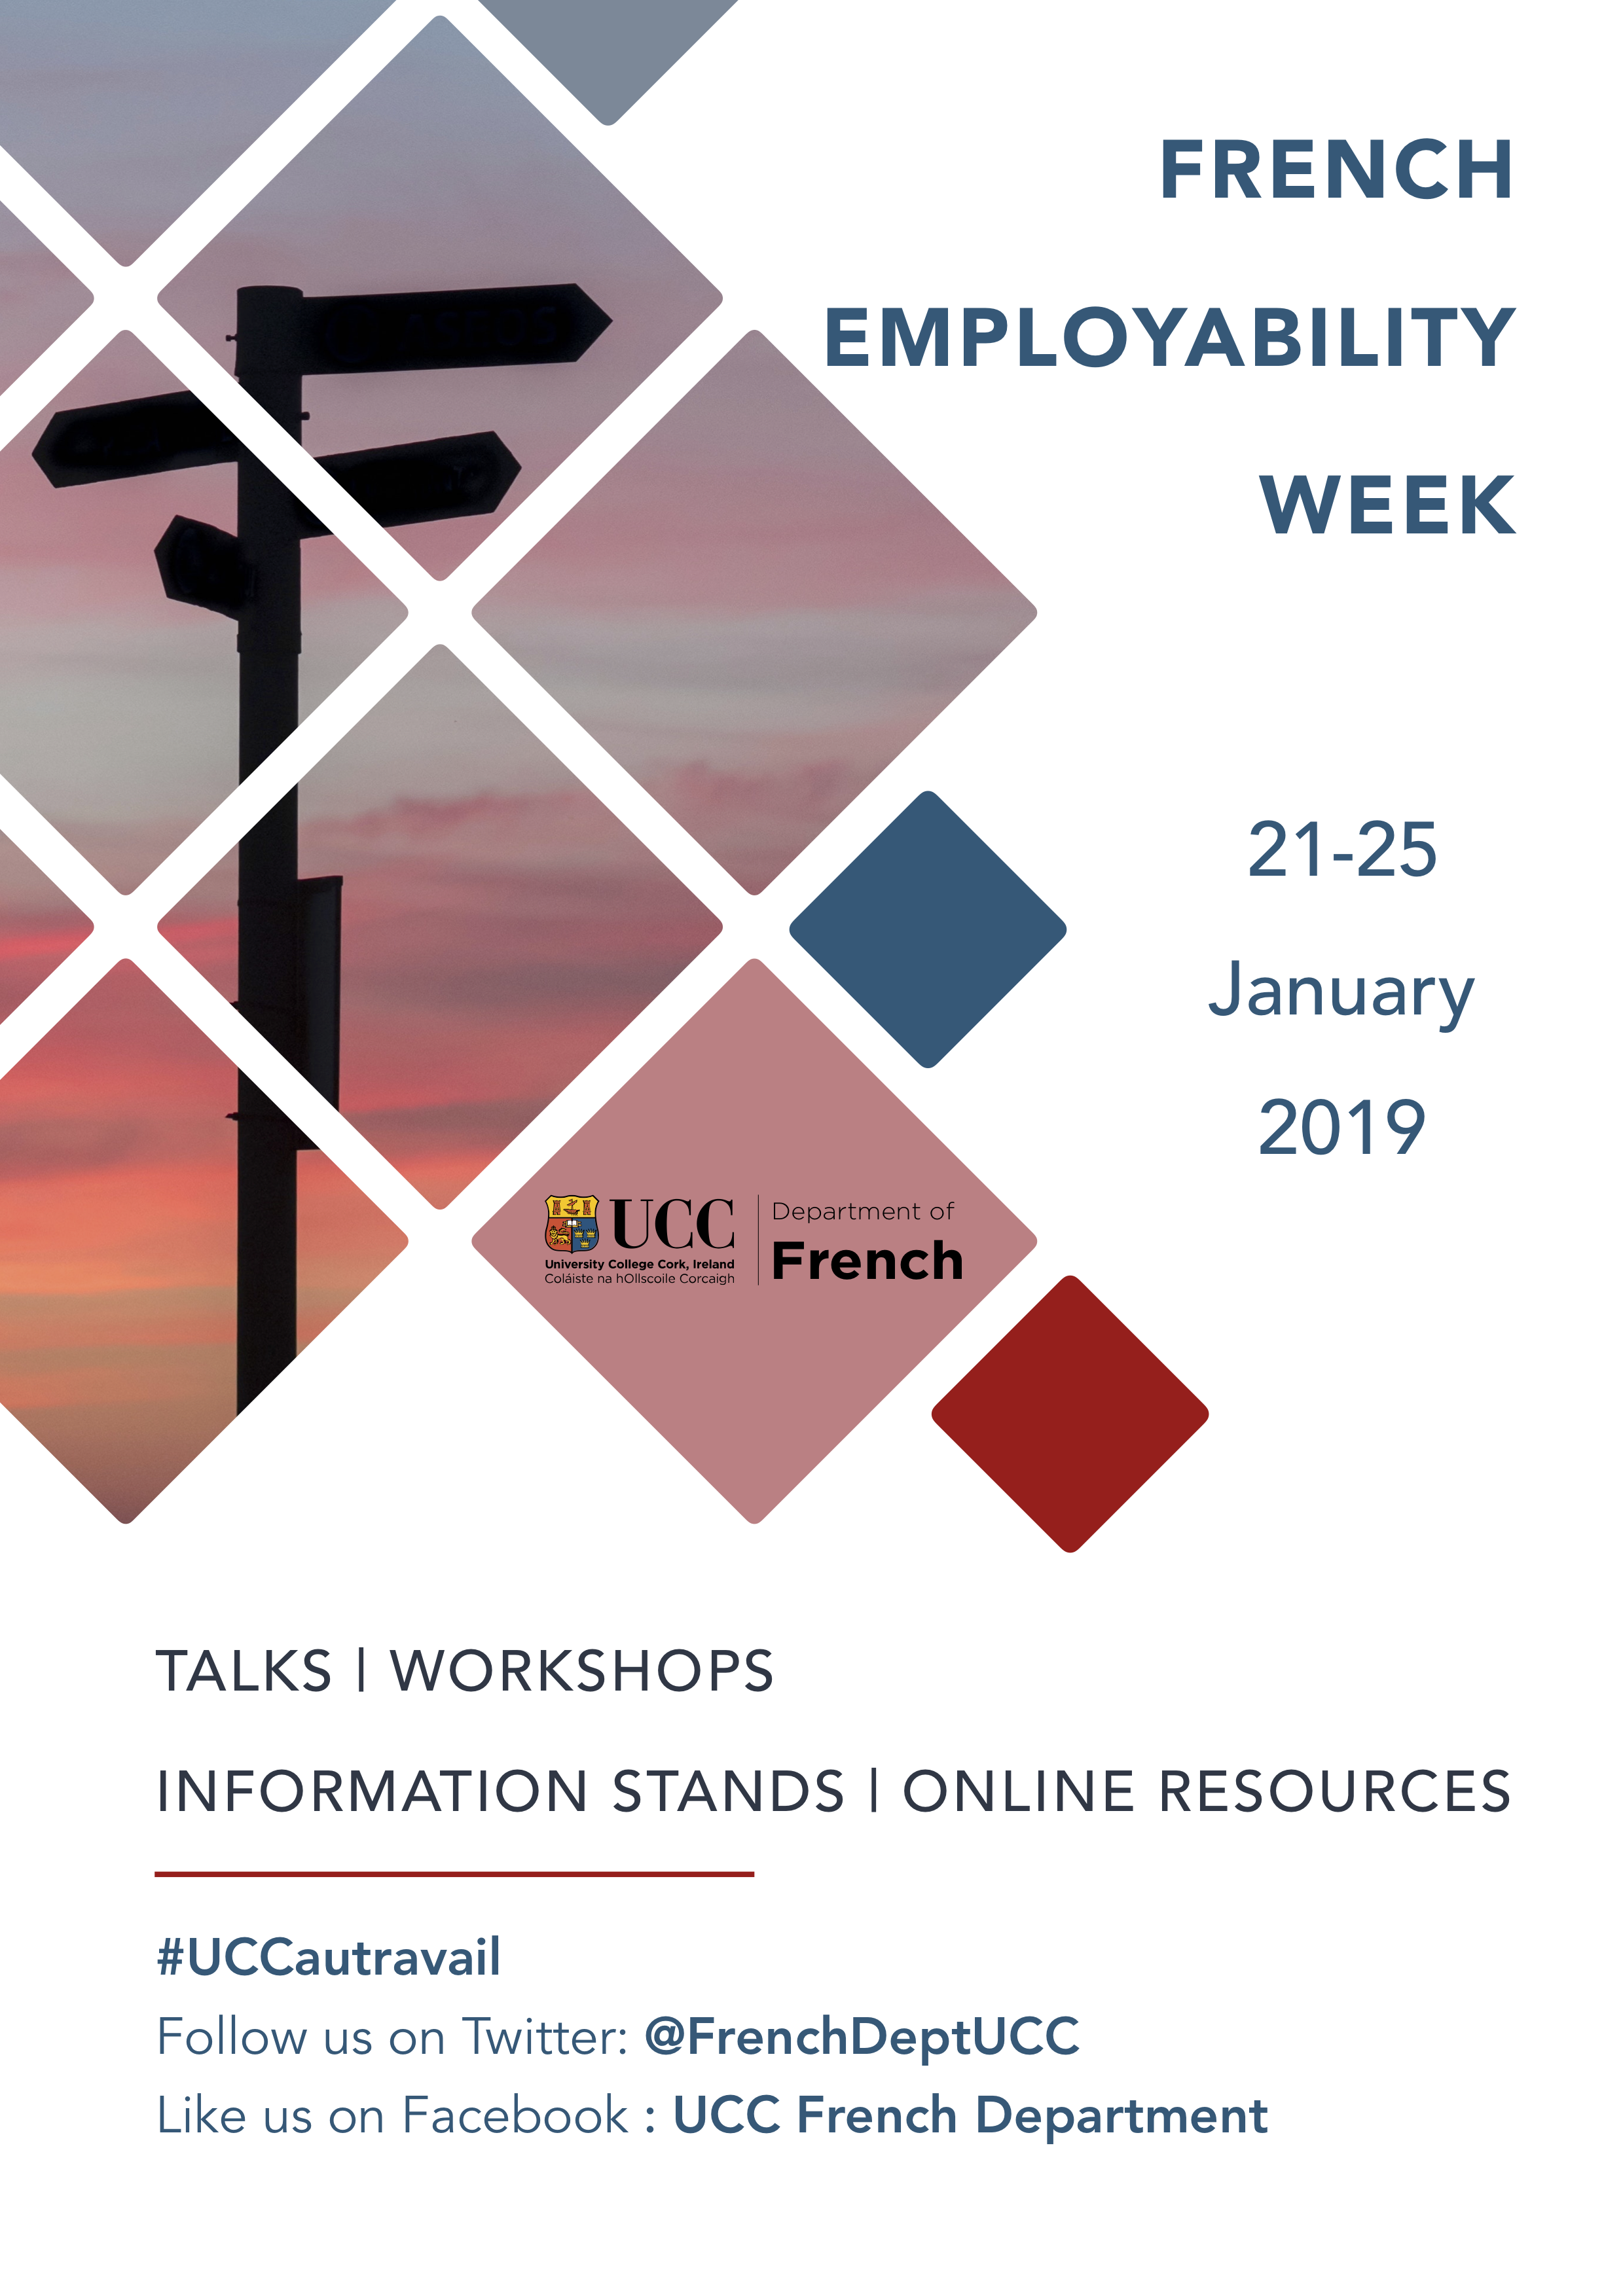 French Employability Week | 21-25 January 2019